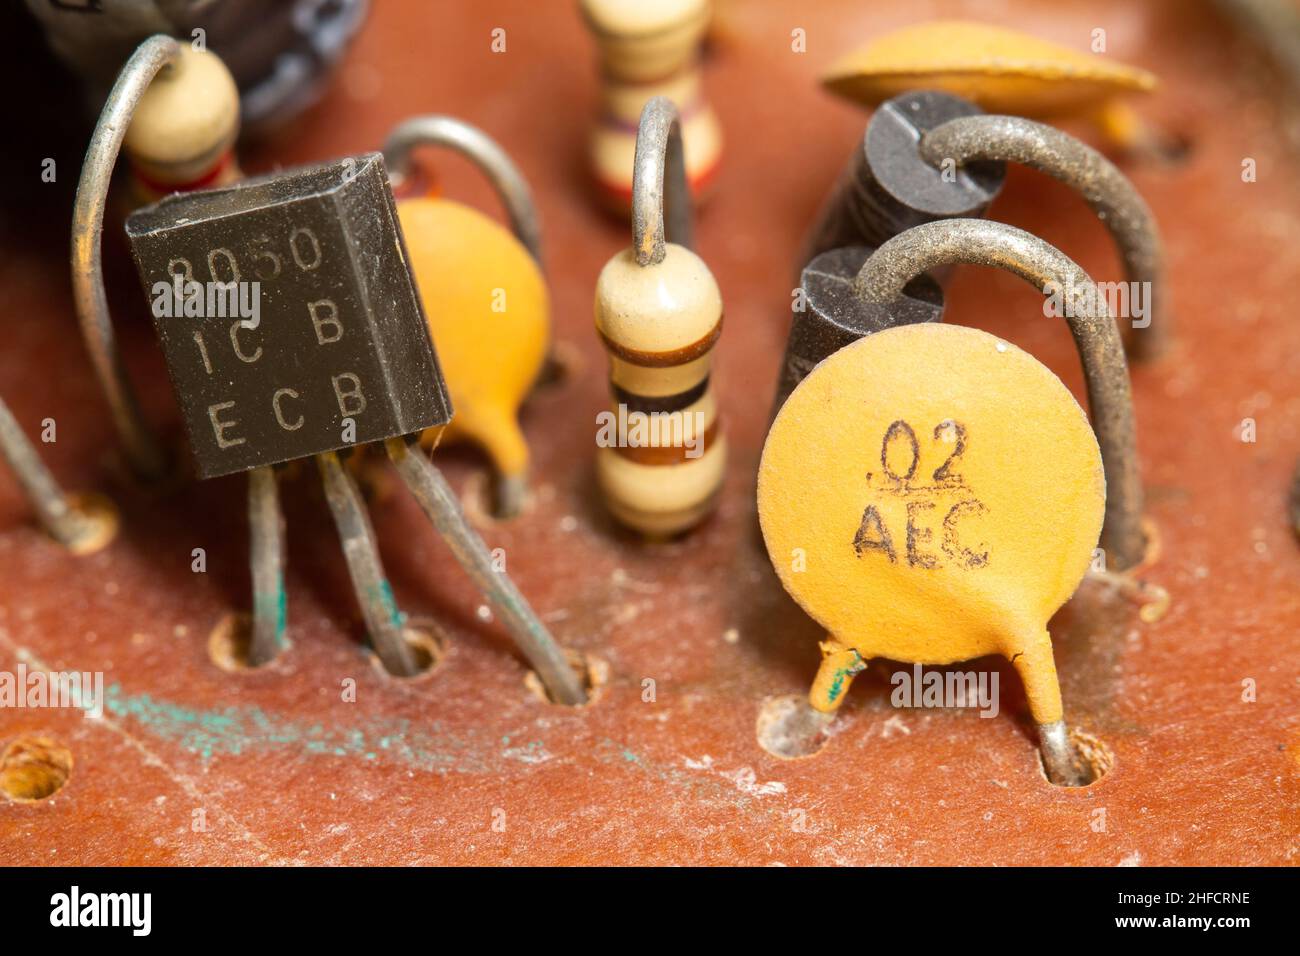 Ancienne carte électronique avec composants électroniques tels que  transistor et condensateur céramique Photo Stock - Alamy